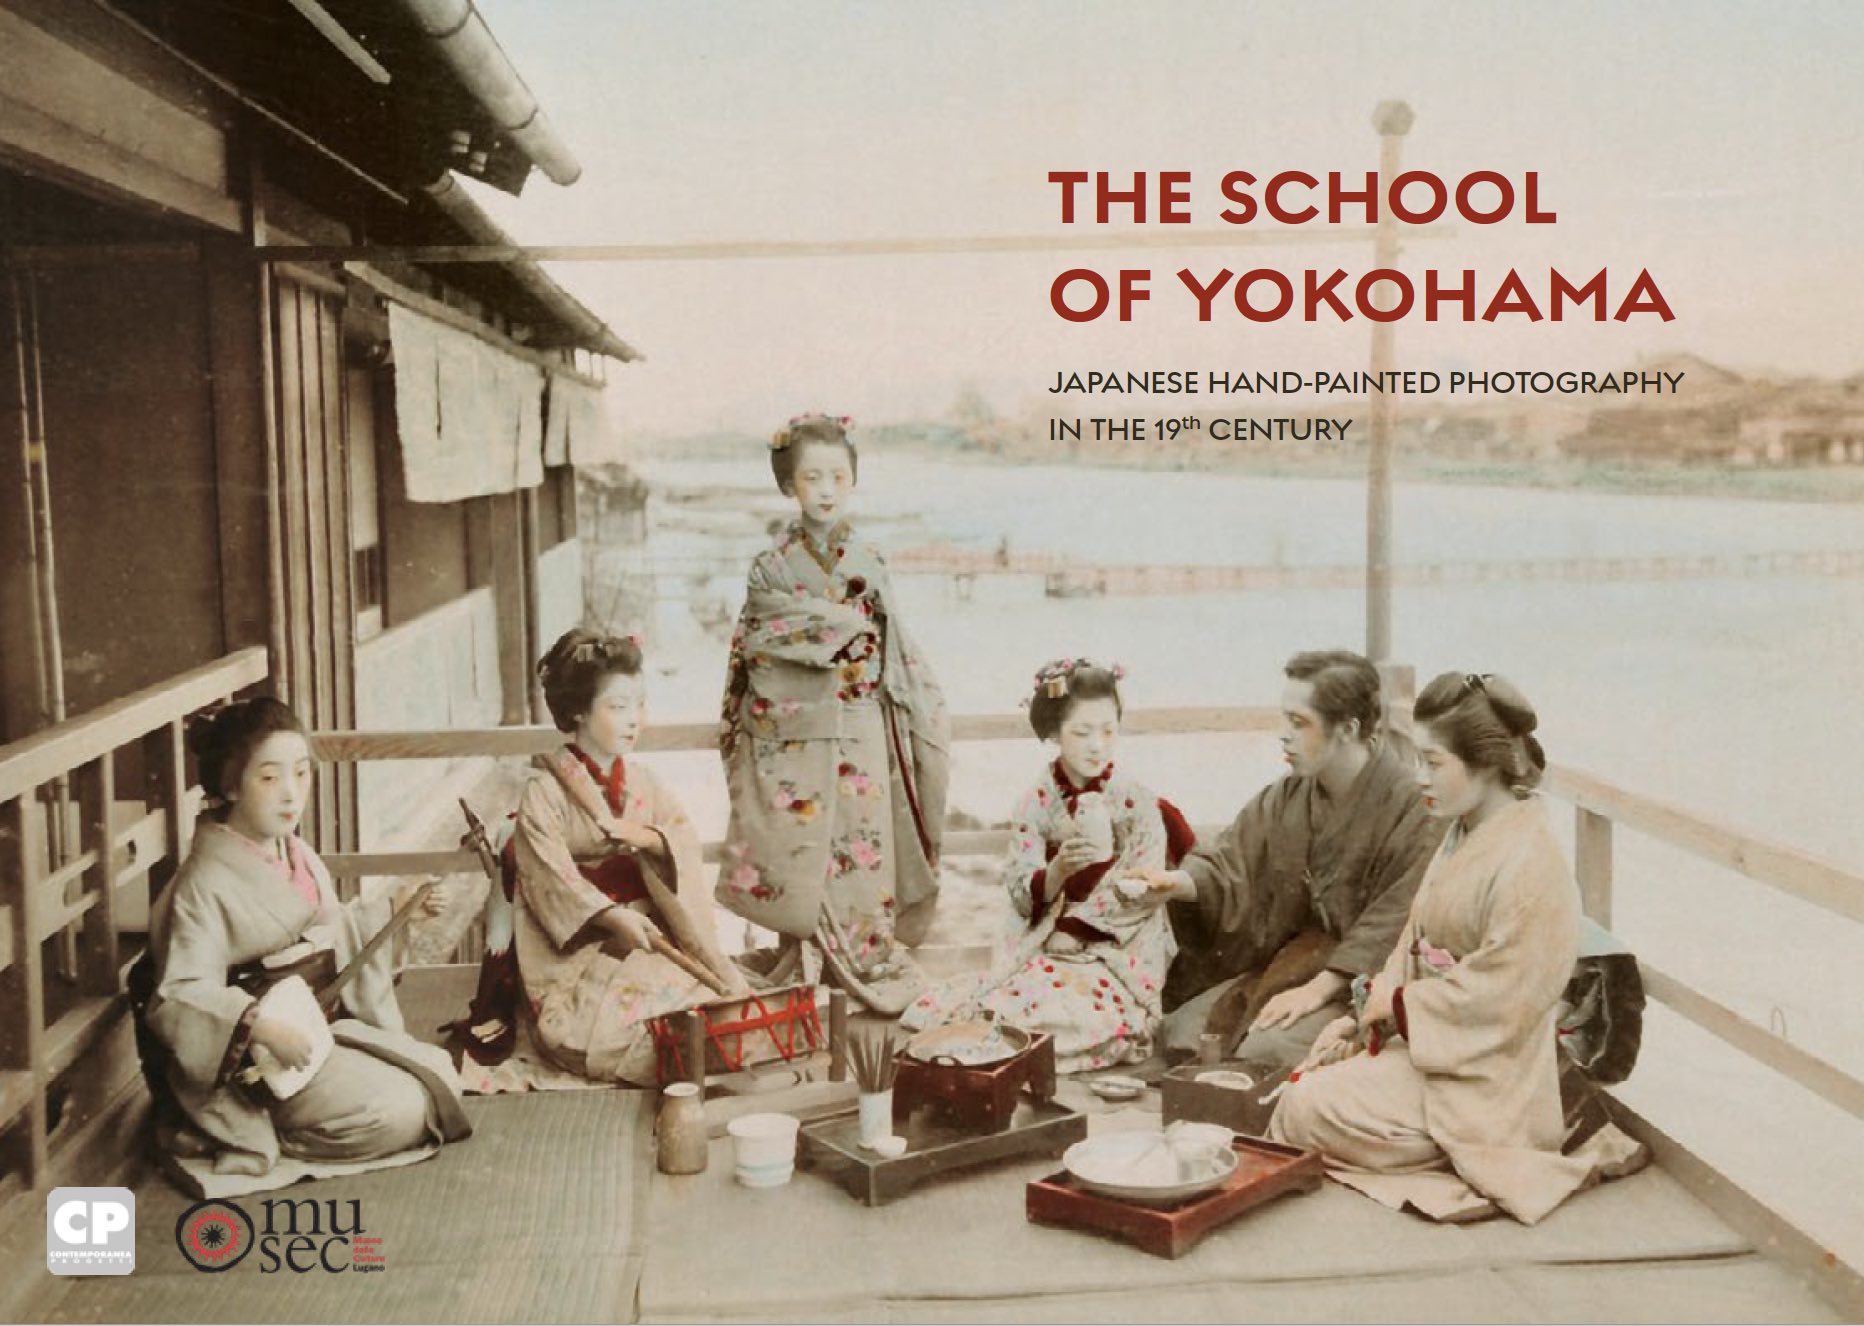 The School of Yokohama